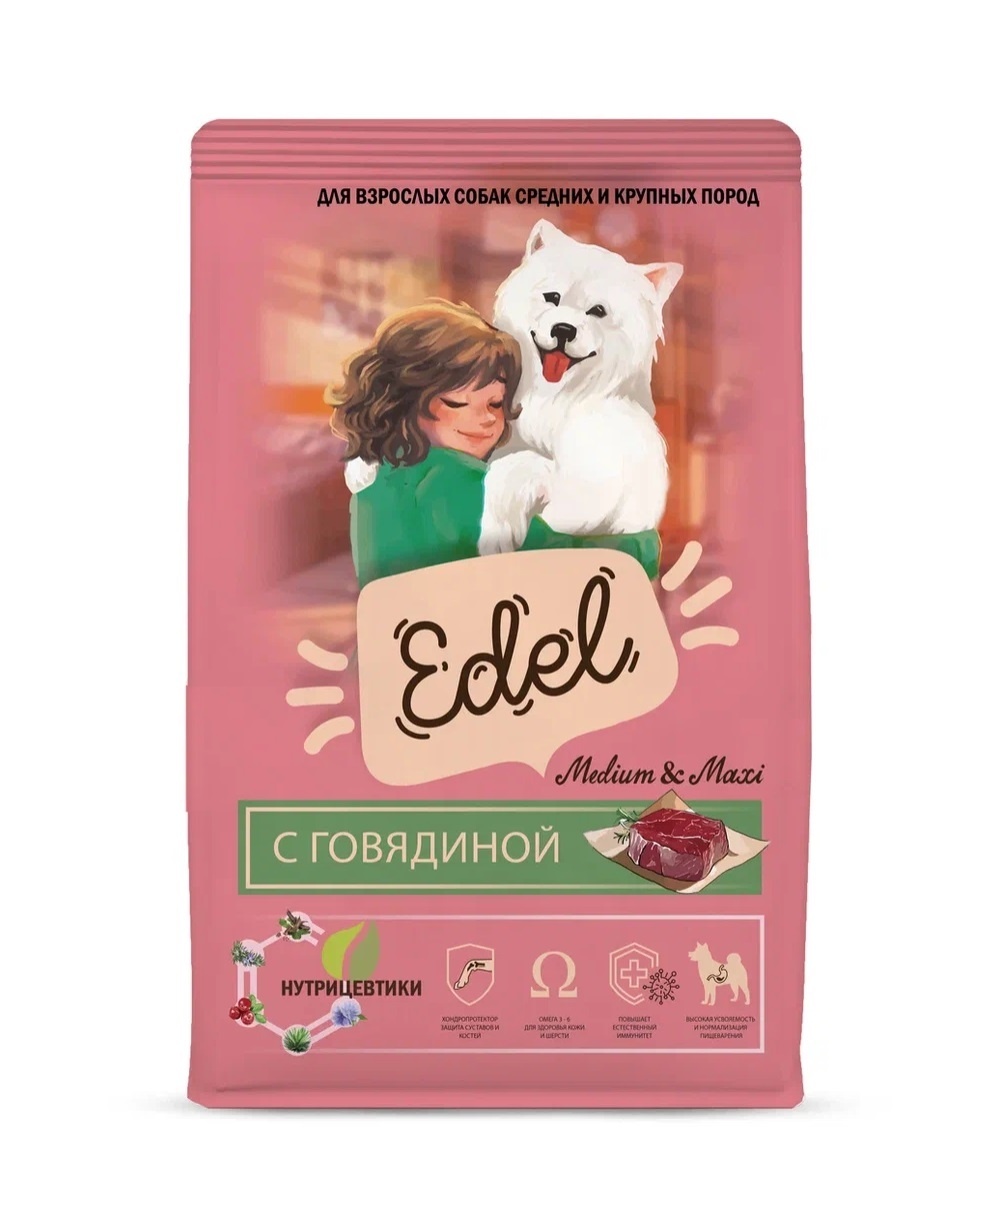 Edel Edel полнорационный сухой корм для взрослых собак средних и крупных пород с говядиной (2 кг)